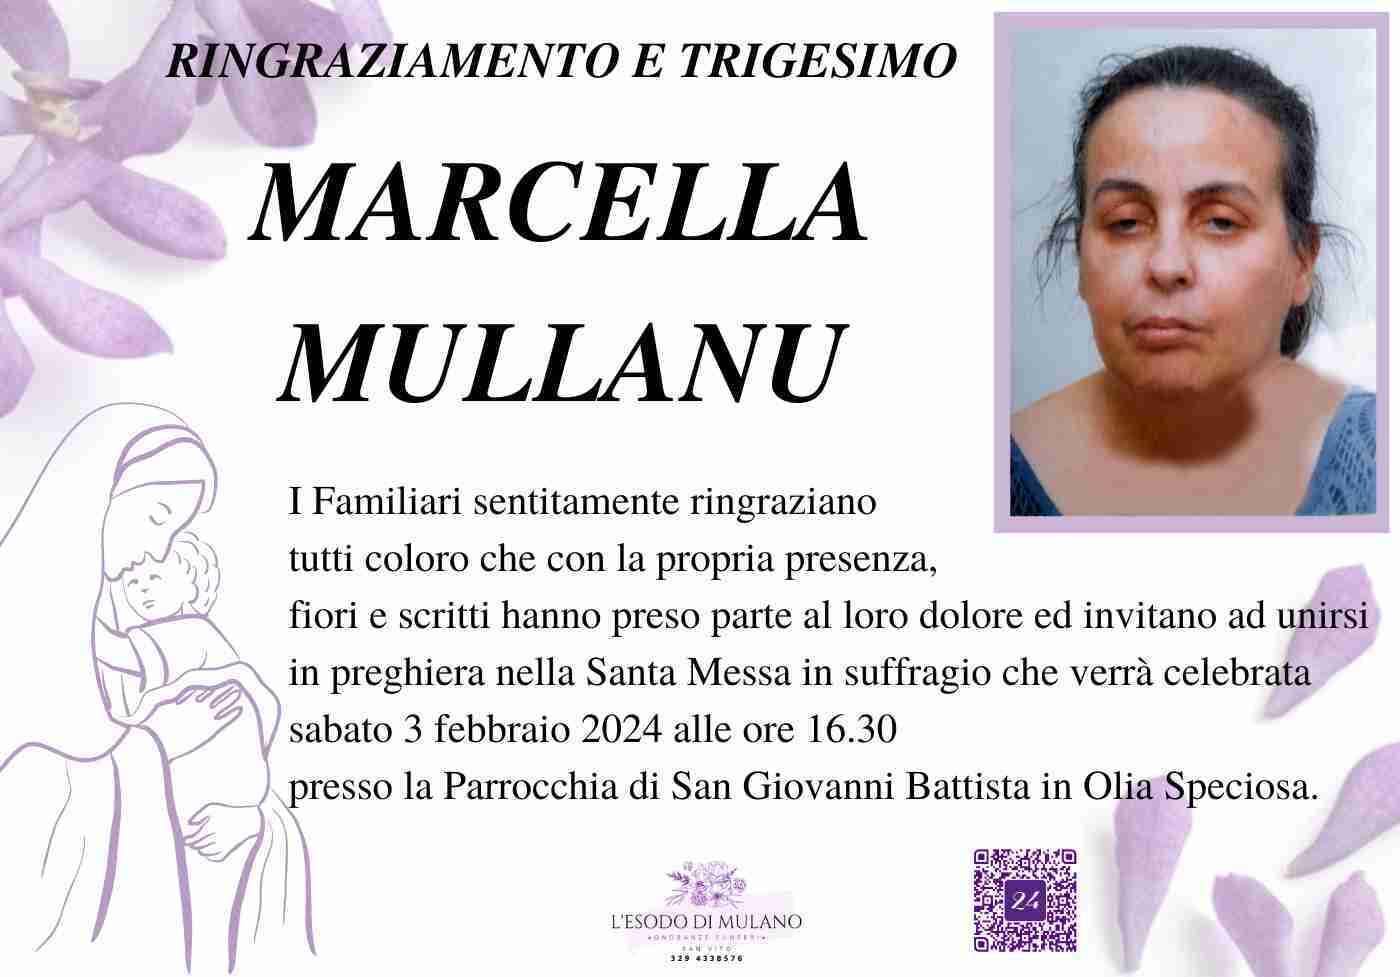 Marcella Mullanu